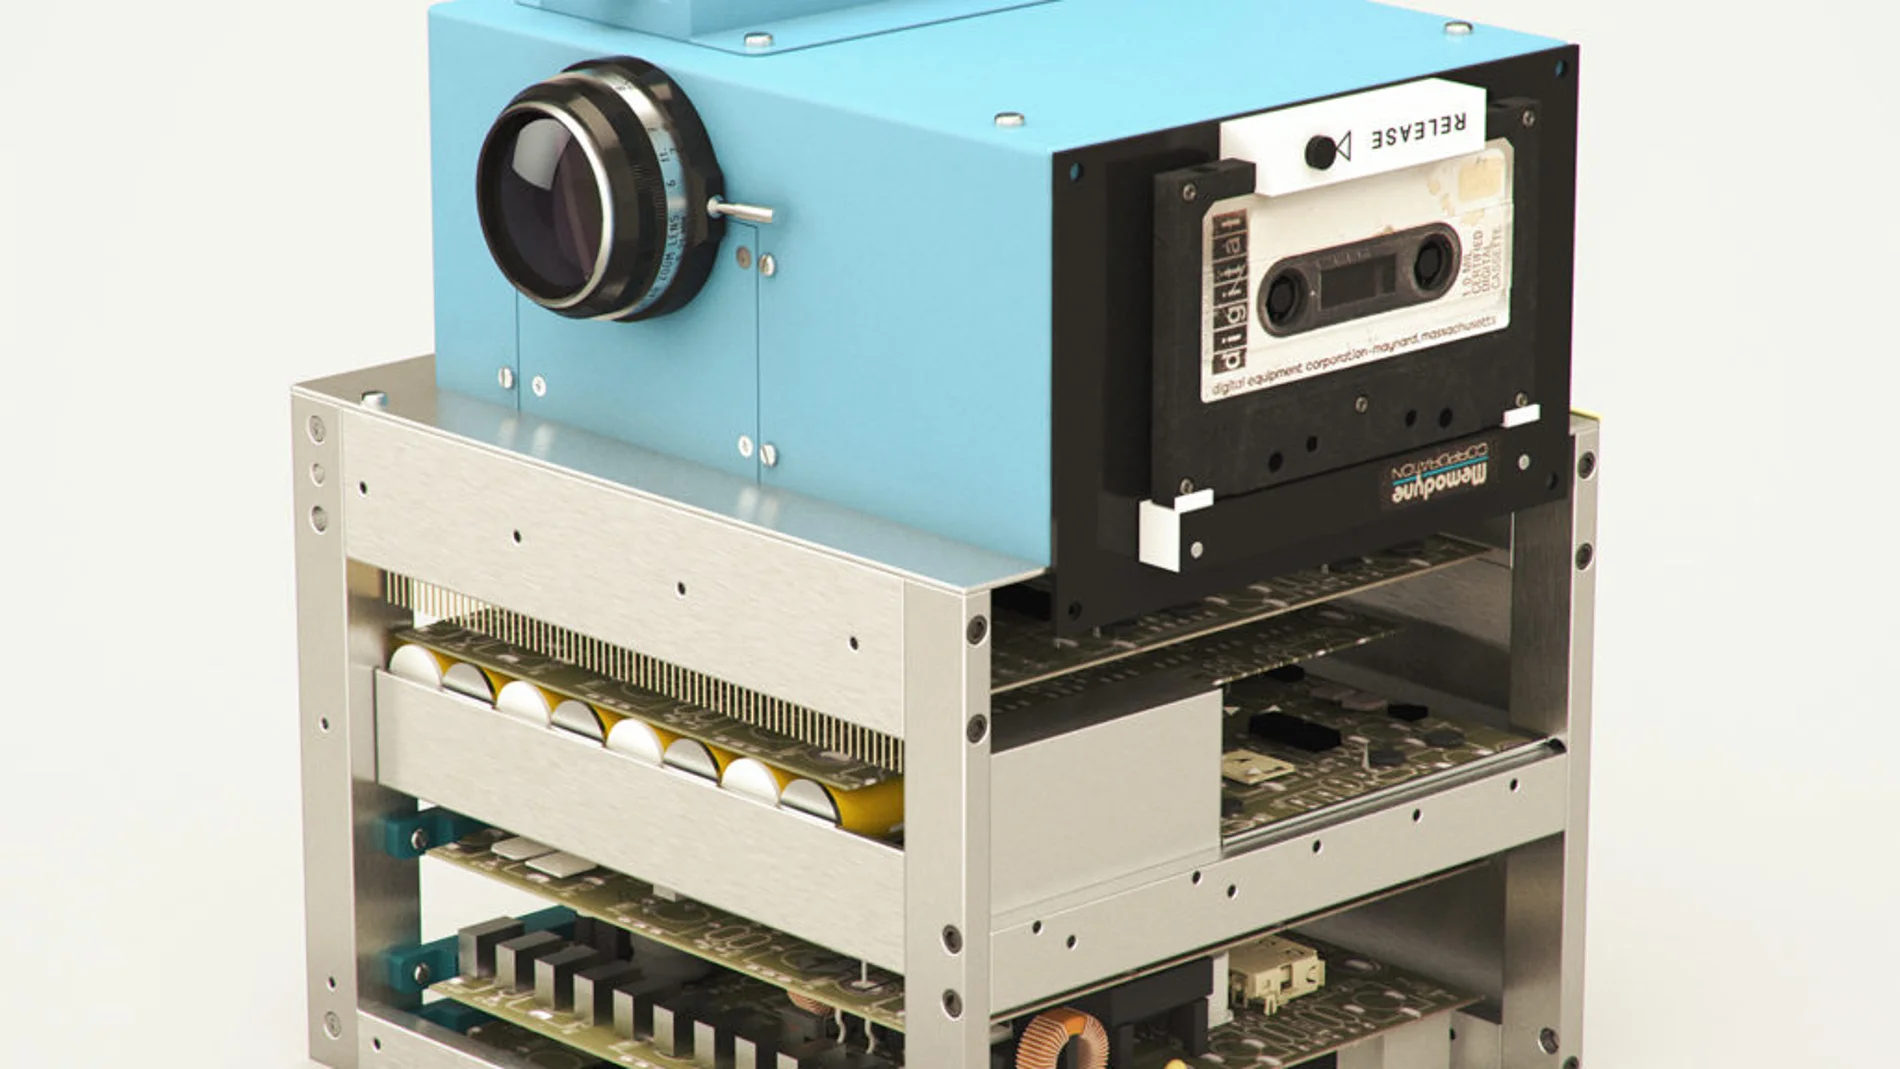 Steve Sasson, ingeniero de Kodak, inventó la primera cámara digital portatil en 1975.